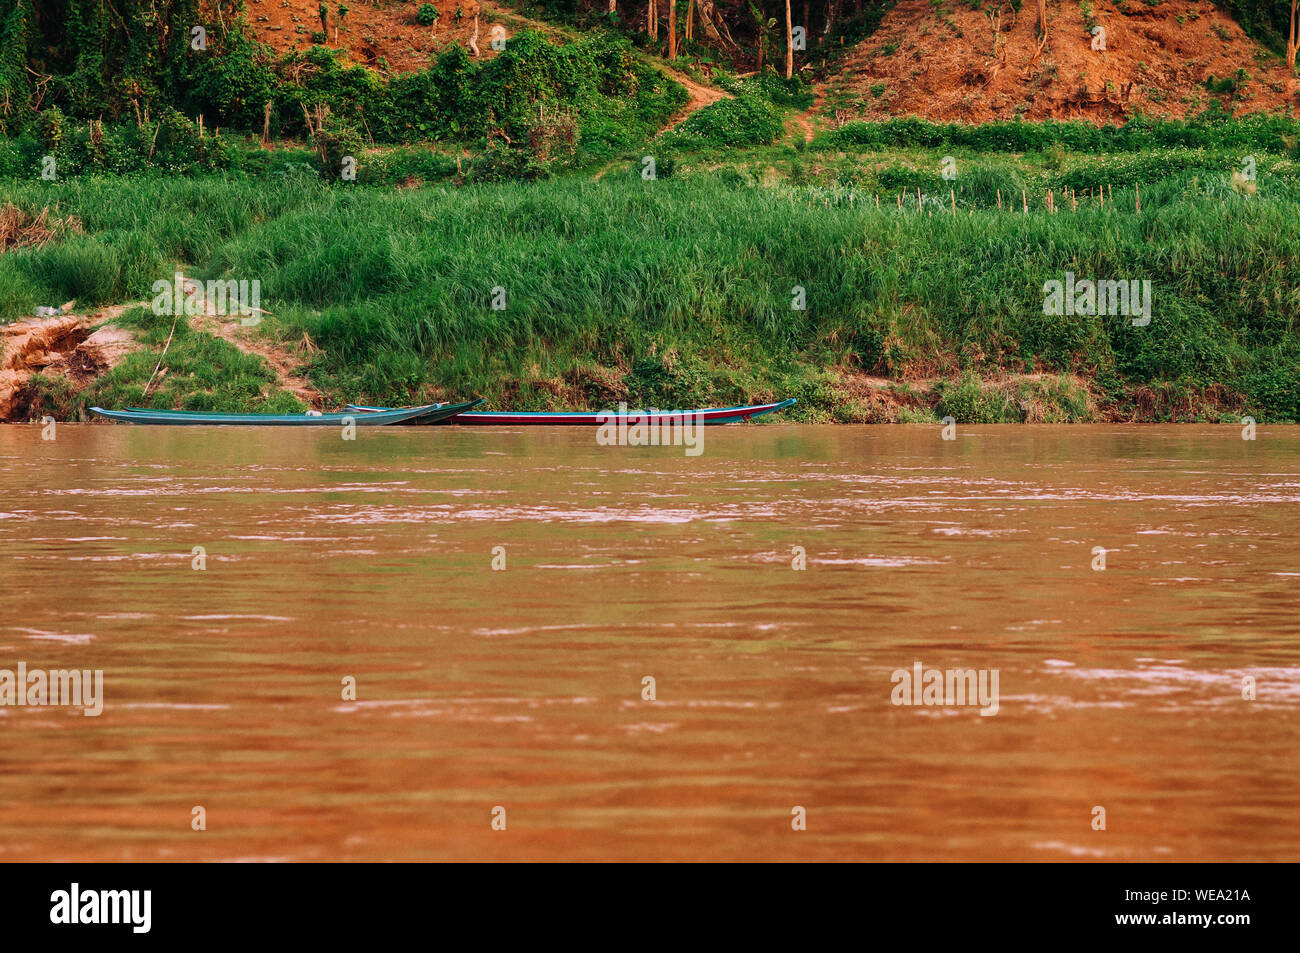 Luang Prabang, Laos - Asian pêcheur local voile en jaune l'eau et les lieux de Mae Khong river avec rivage vert Banque D'Images